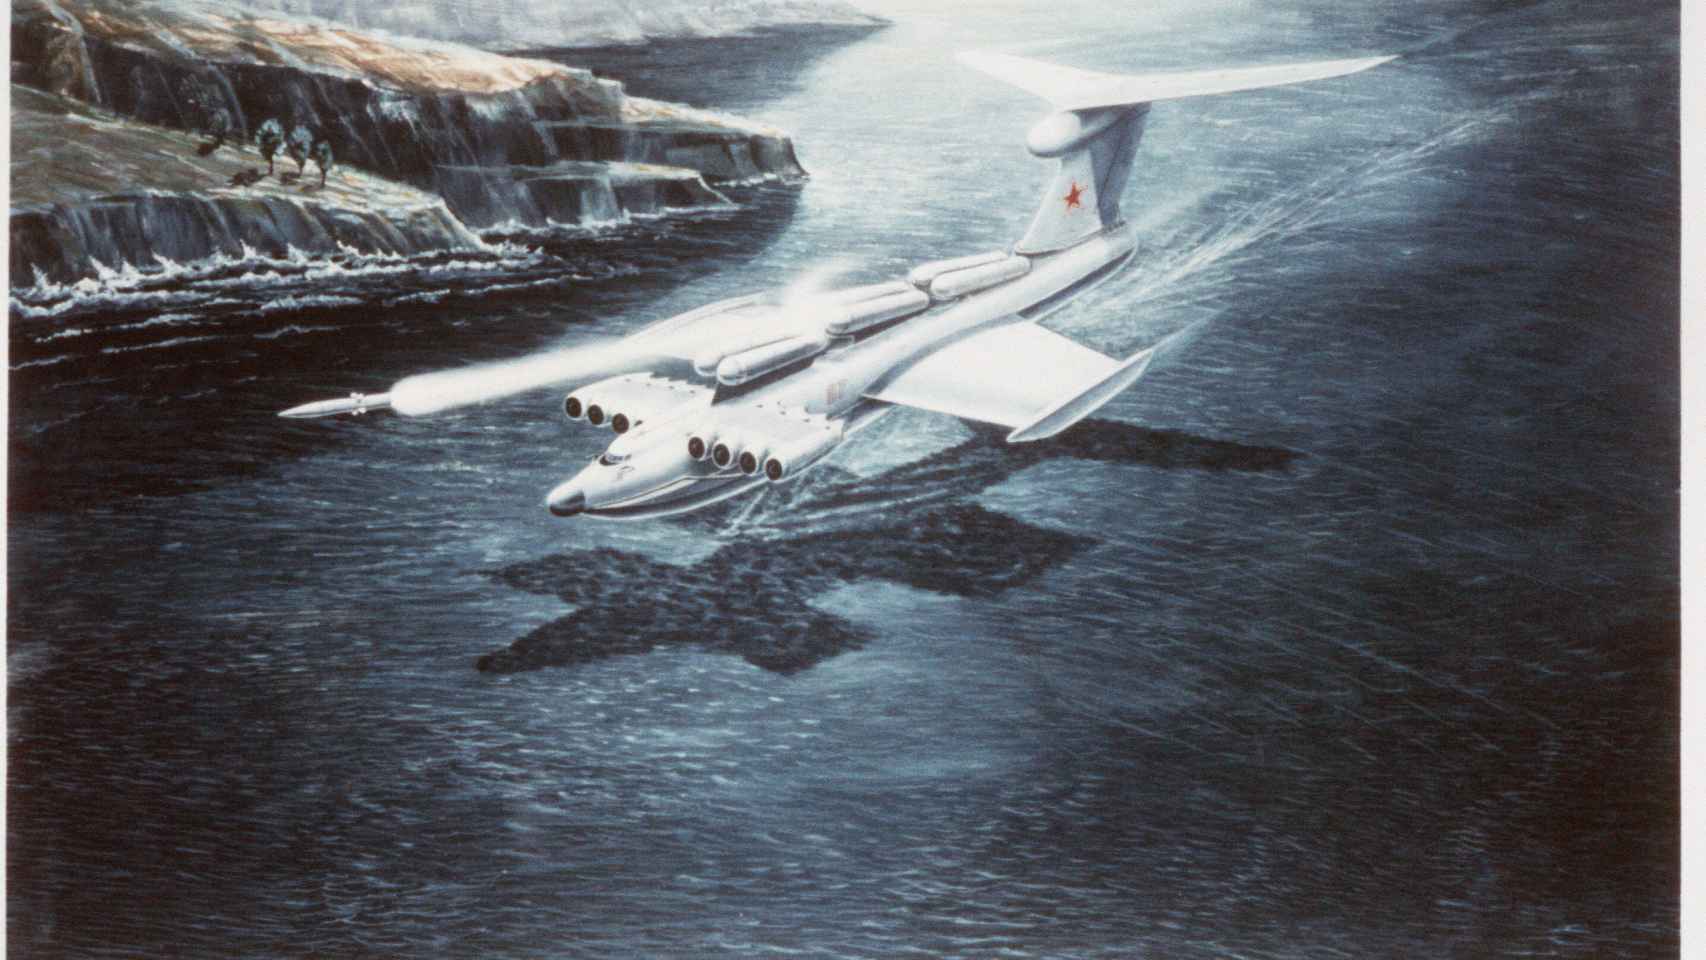 Concepto artístico soviético del ekranoplano, aunque no es fidedigno con el diseño final de la nave.